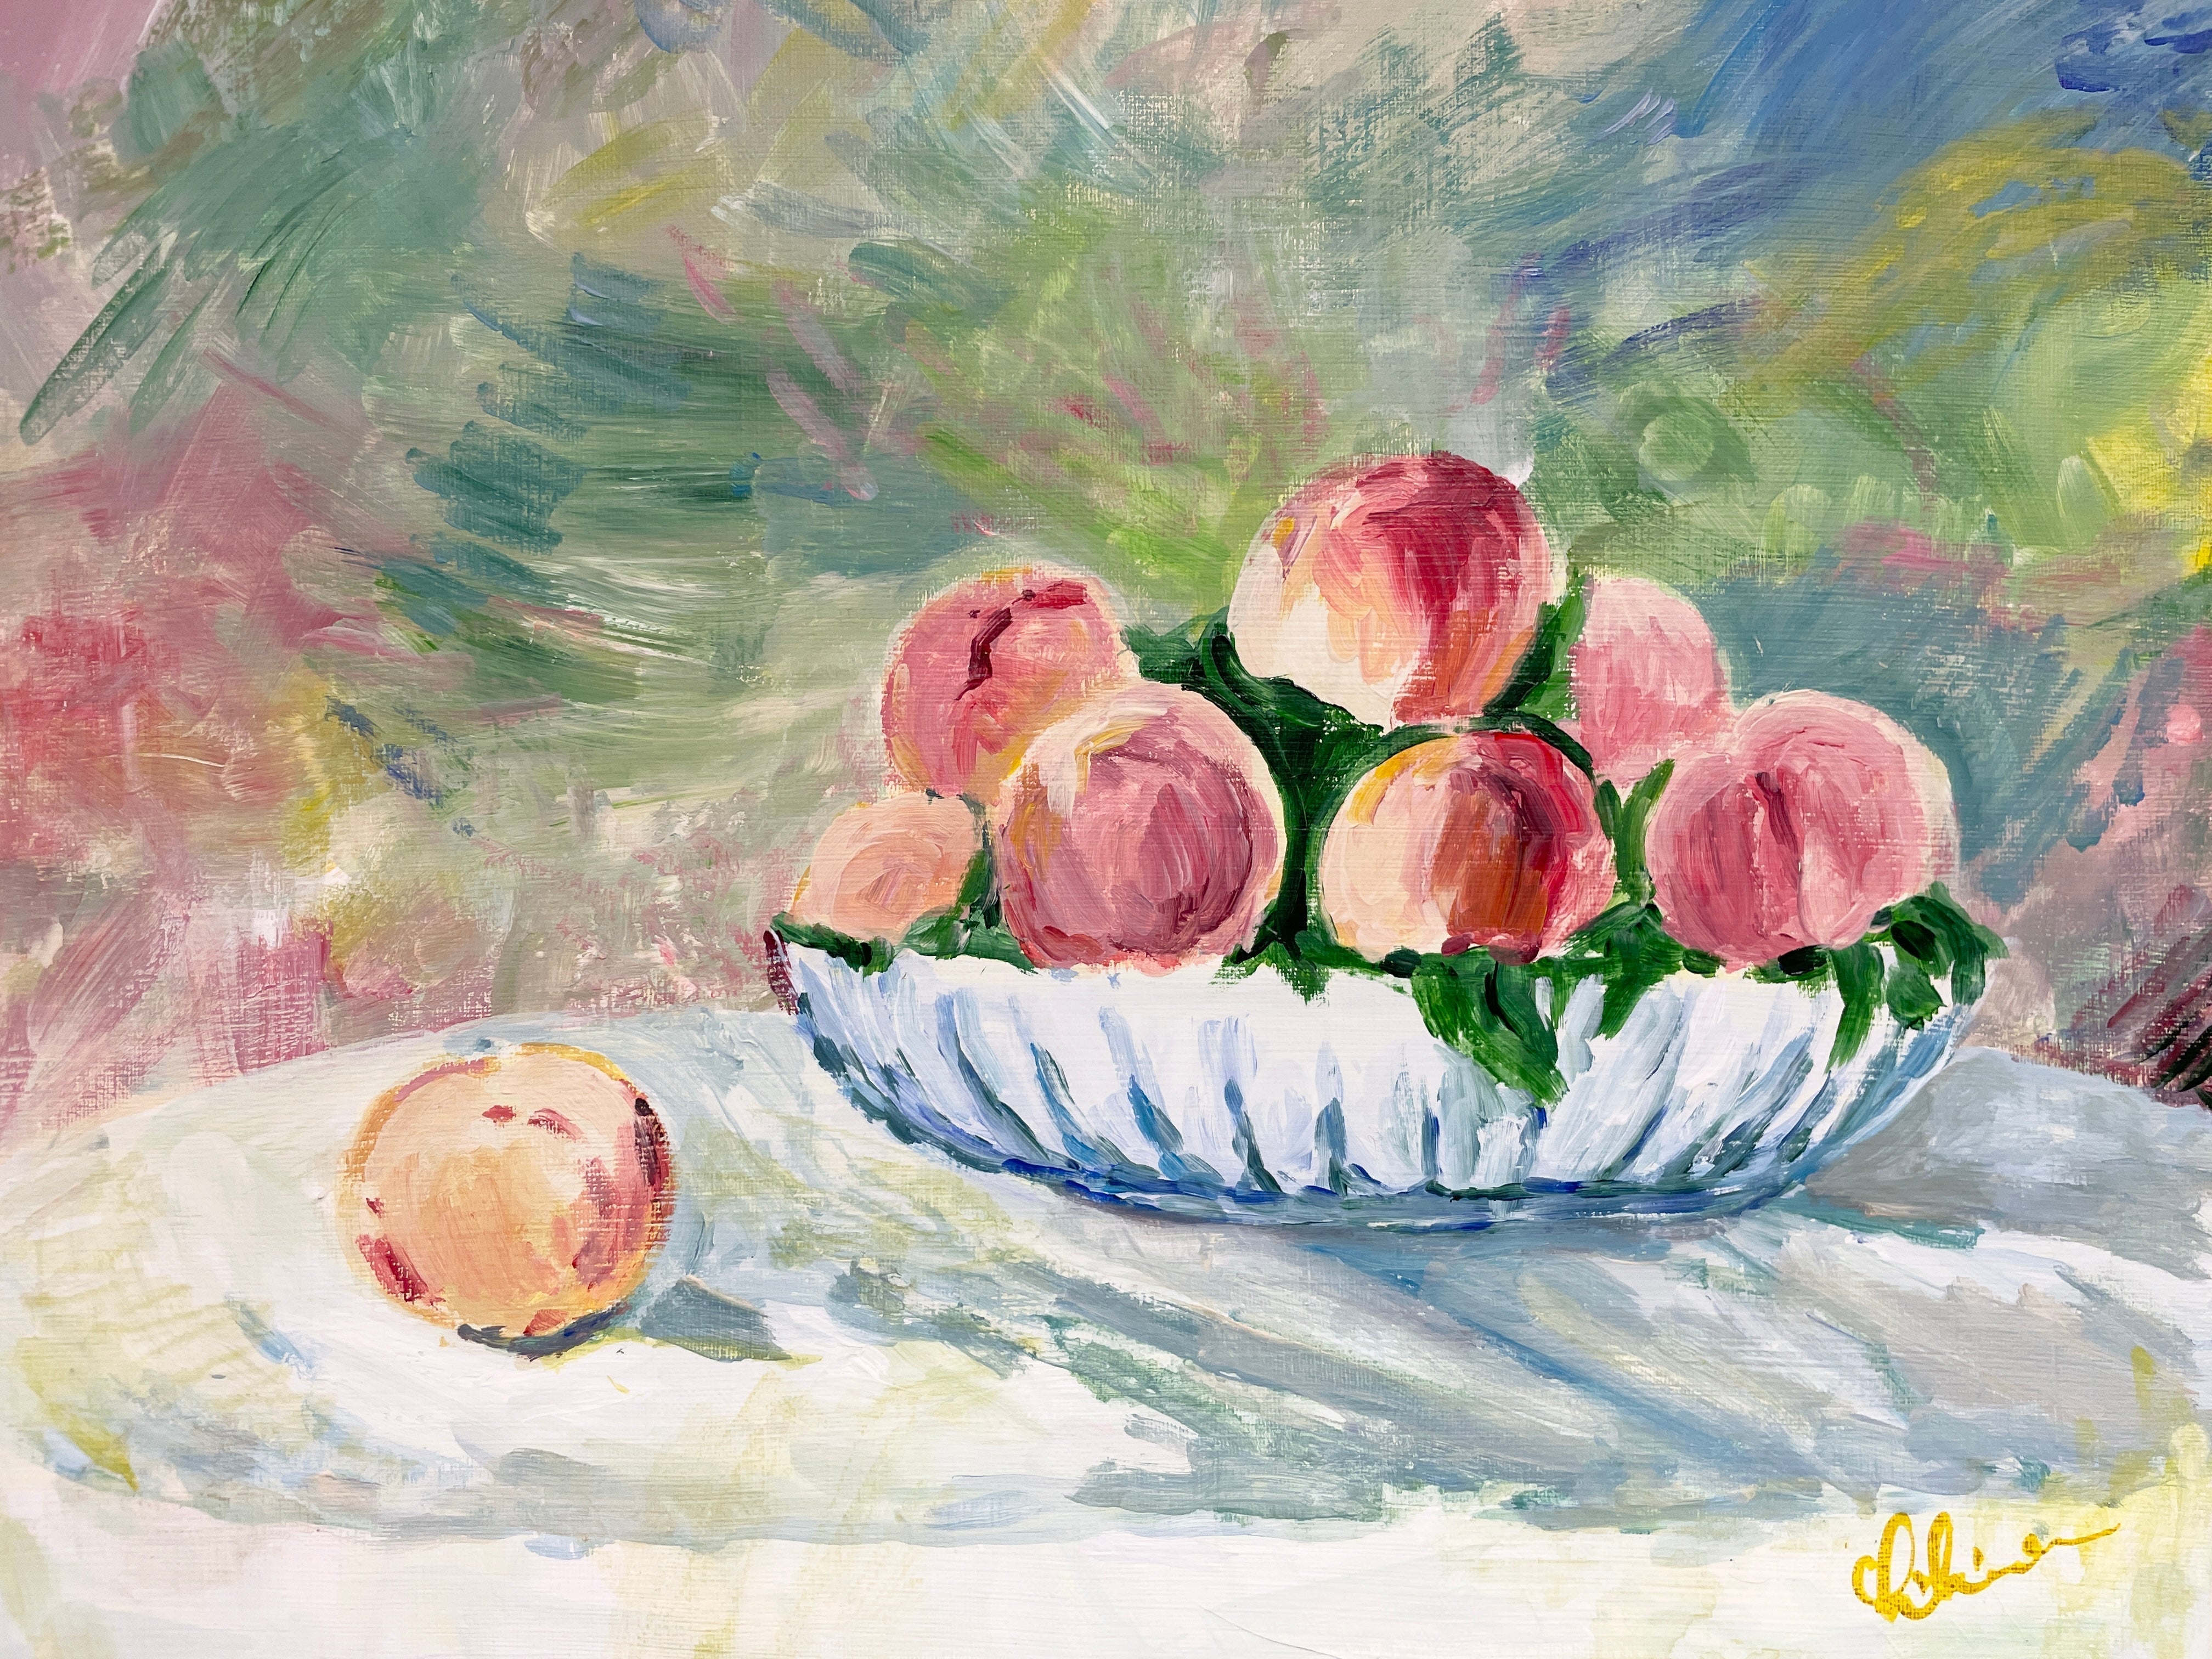 06月01日 (土) 13:00-16:00 | 上野/根津 | オーギュスト・ルノワール | 桃の静物画 (Peach Still-life Painting by Pierre-Auguste Renoir at Ueno/Nezu)